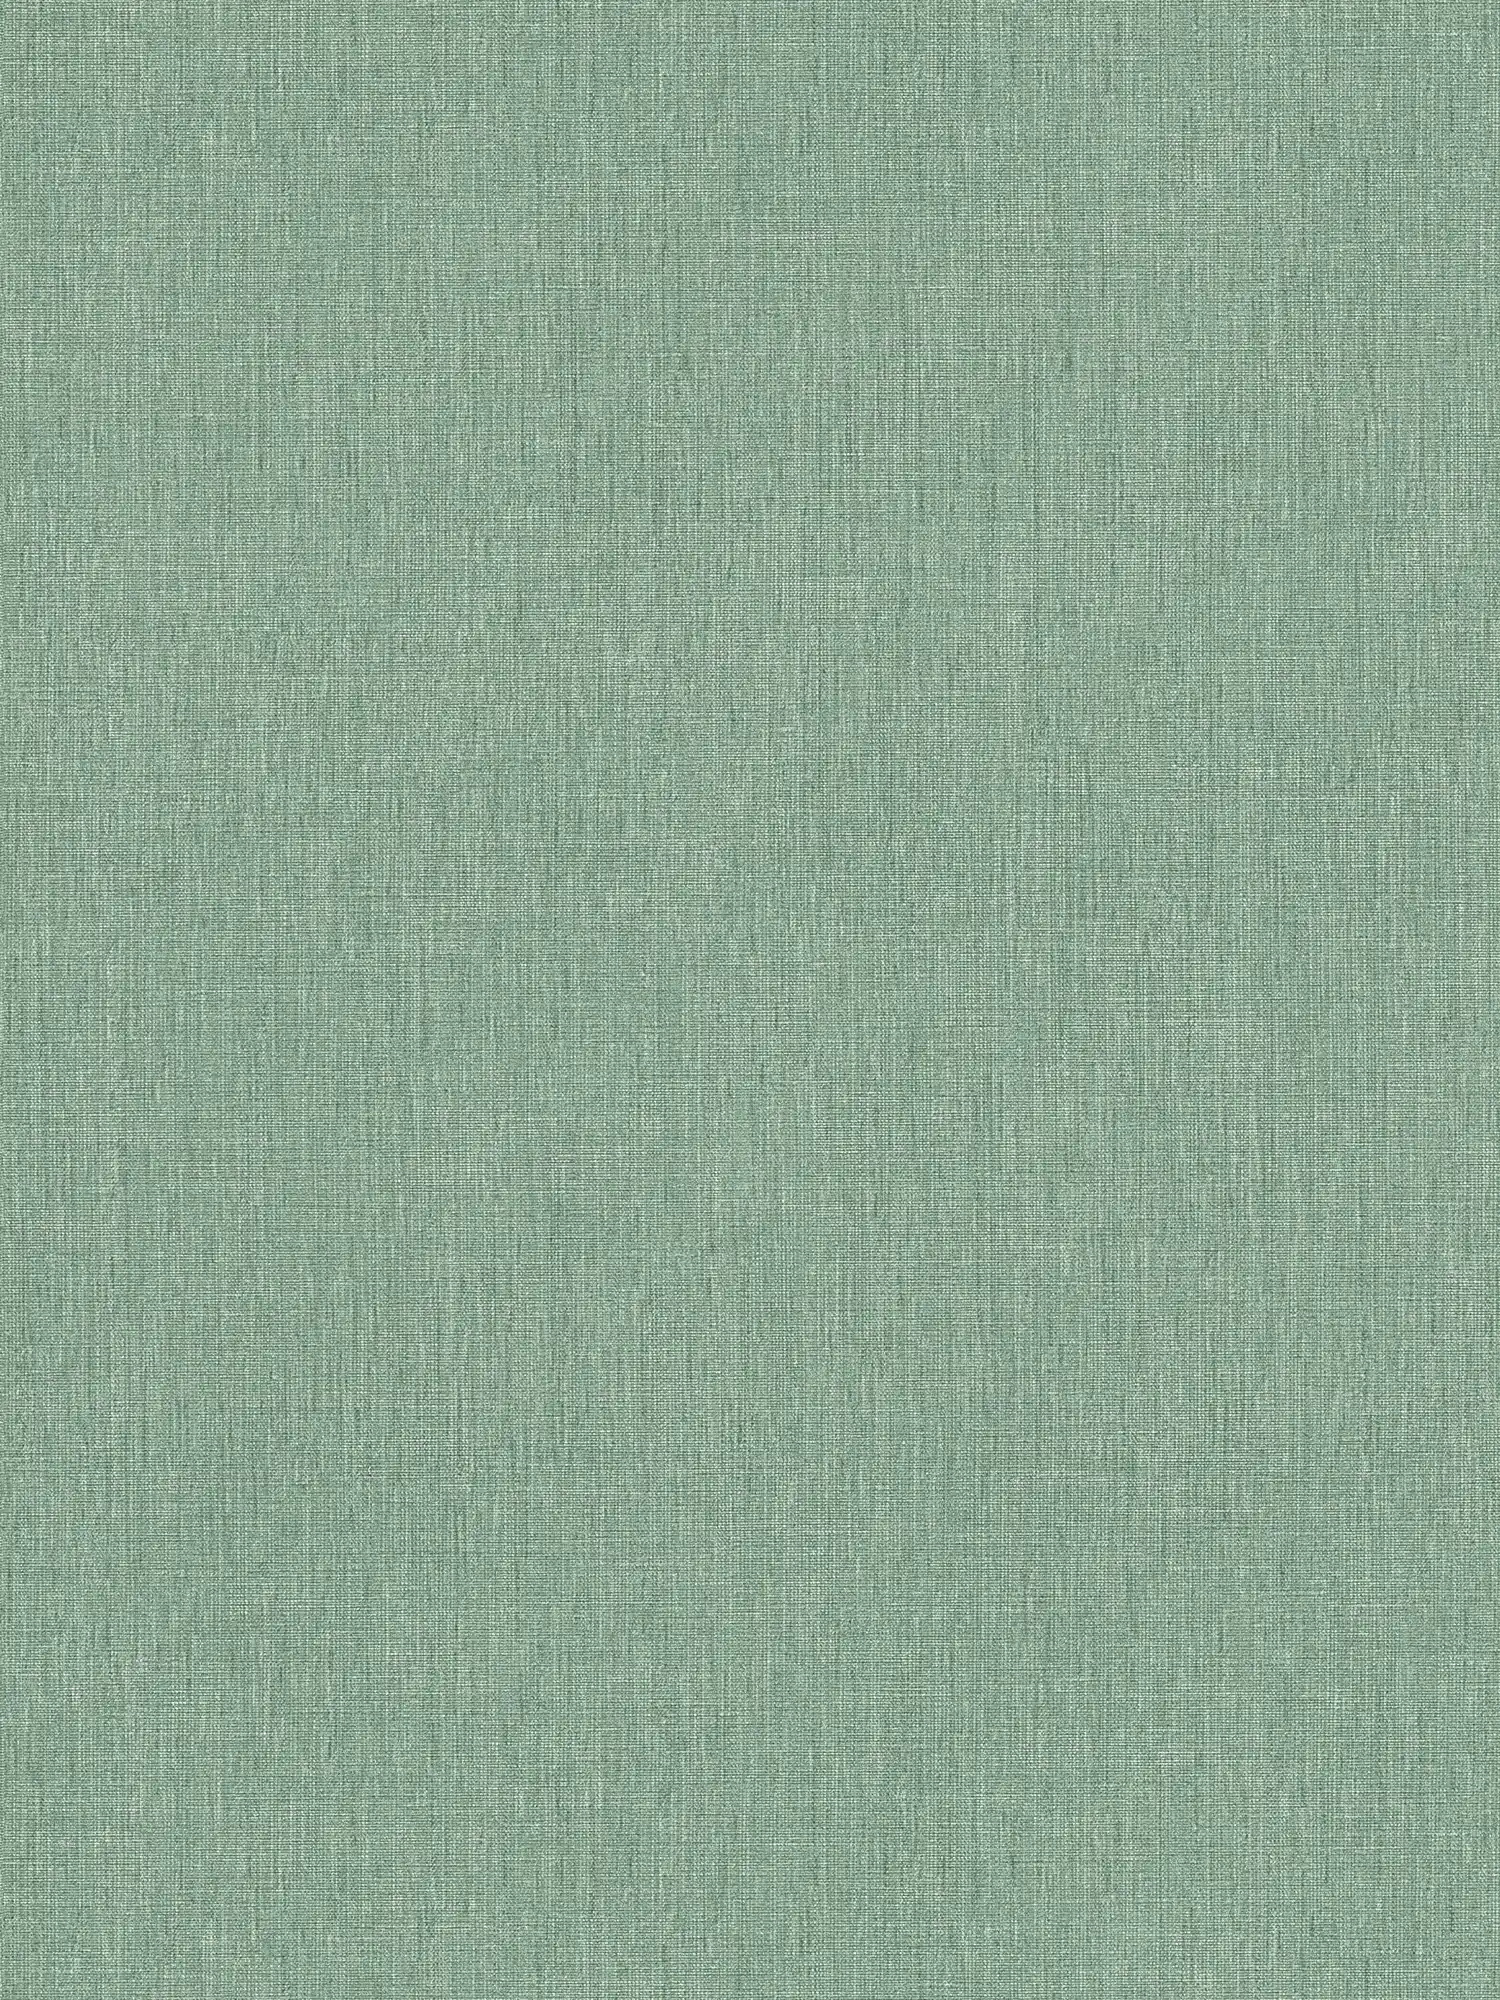 Eenheidsbehang in textiellook met textuur - groen
